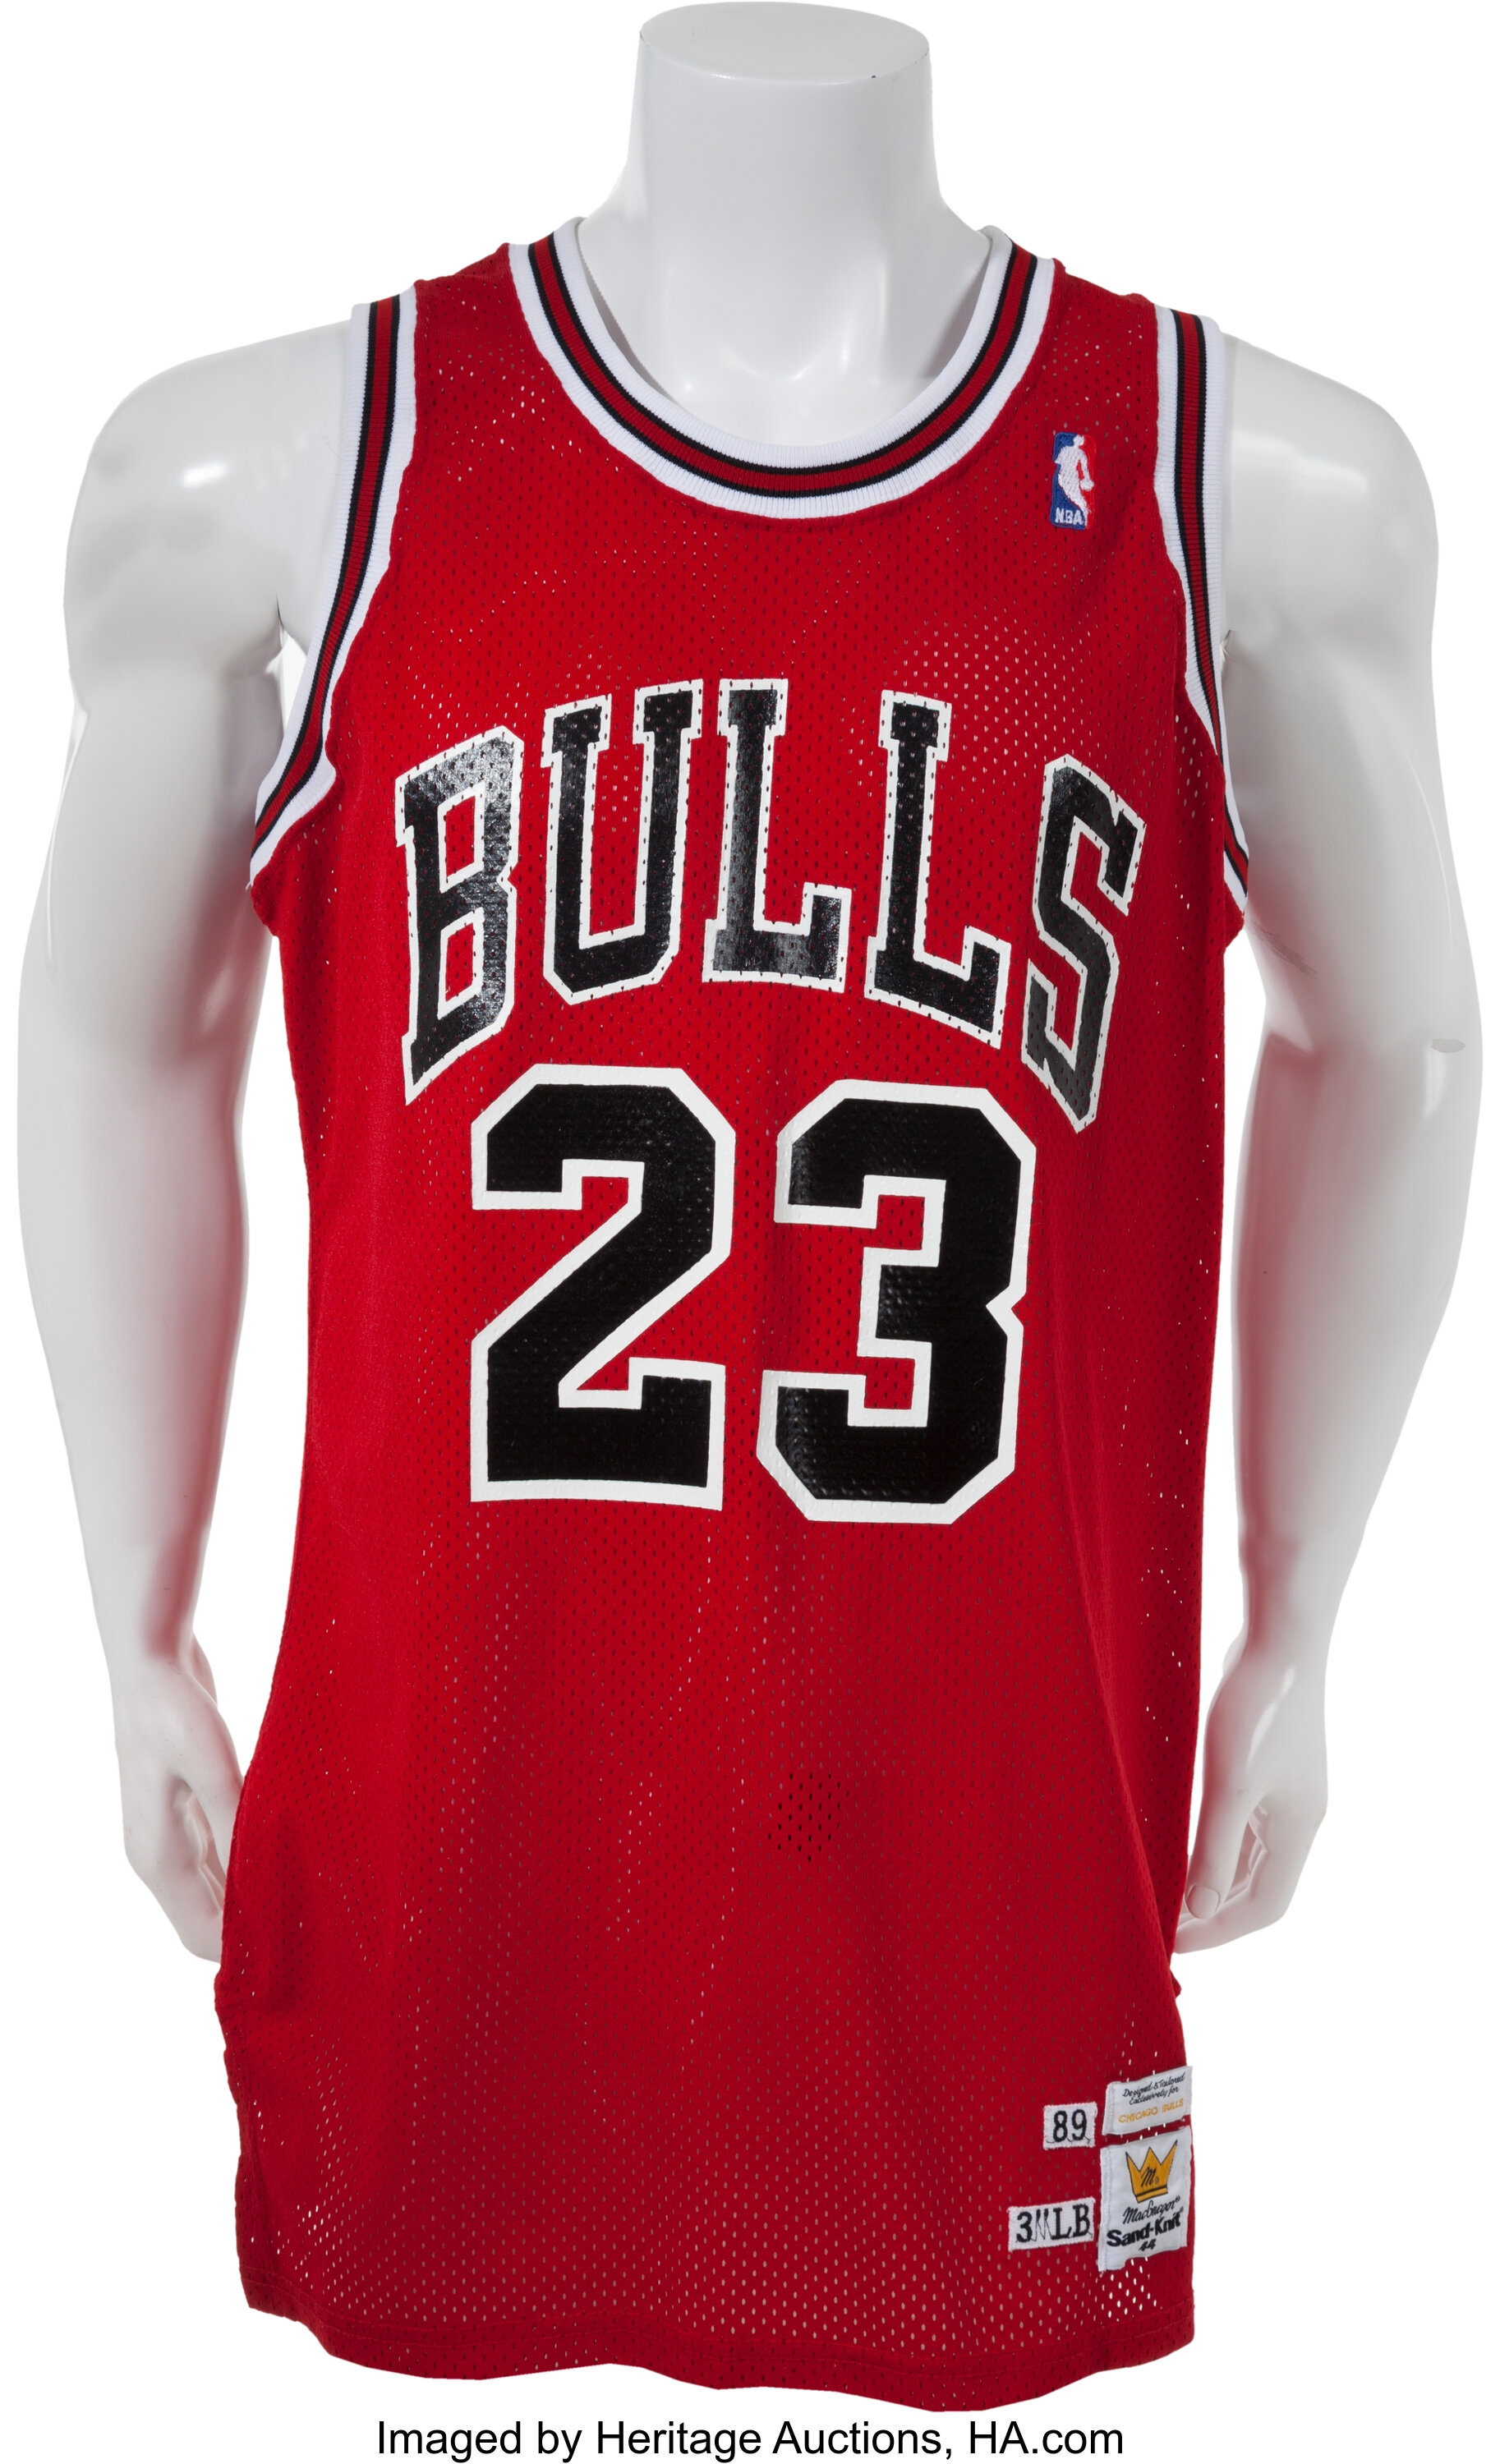 Chicago Bulls jersey - Gem